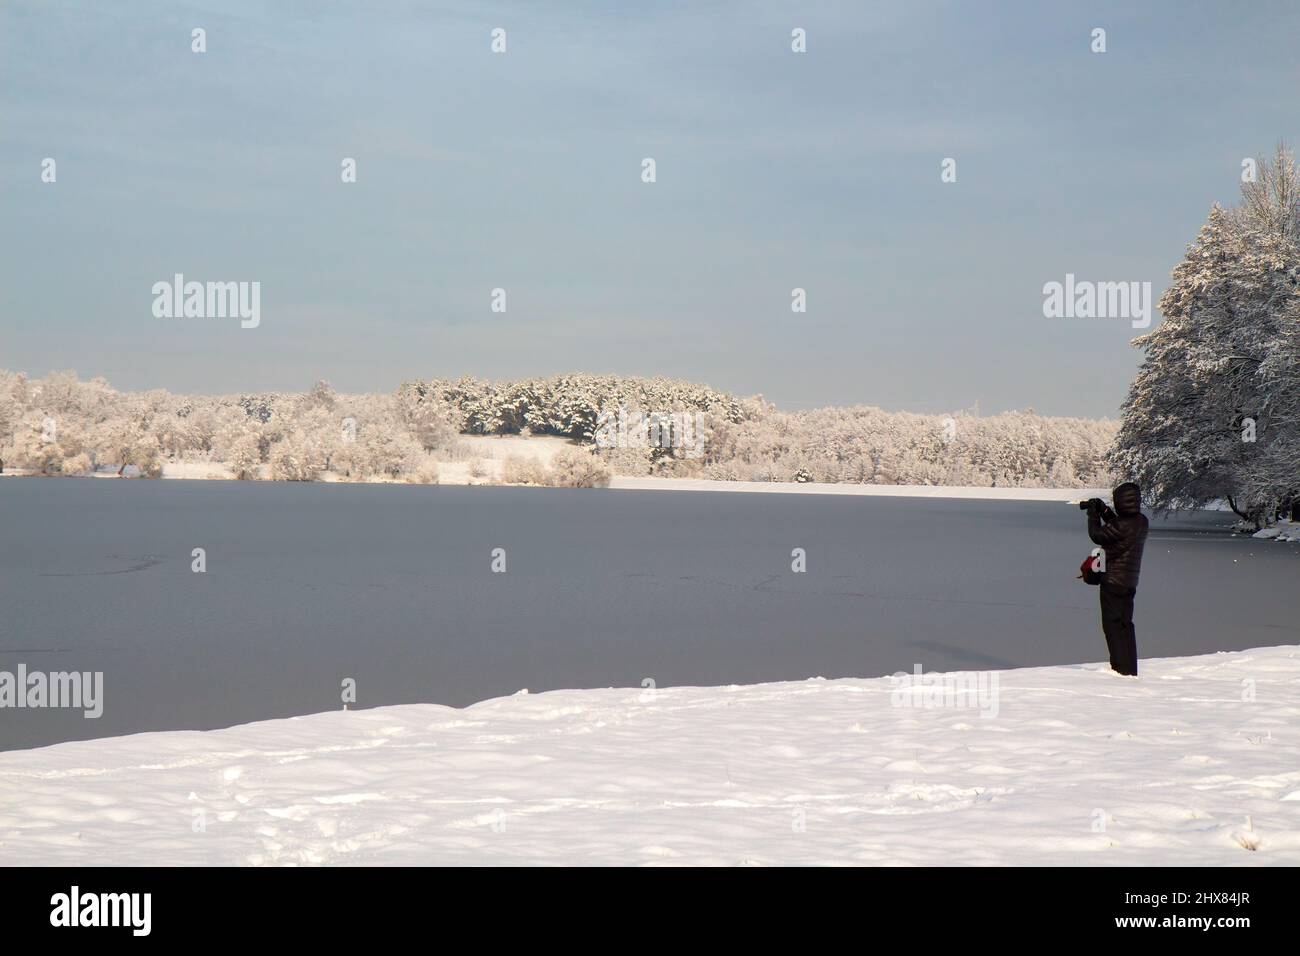 MINSK, BÉLARUS - 10 DÉCEMBRE 2017 : un homme photographie un paysage d'hiver. Lac sous la glace, arbres enneigés, gel, neige, journée claire. Banque D'Images